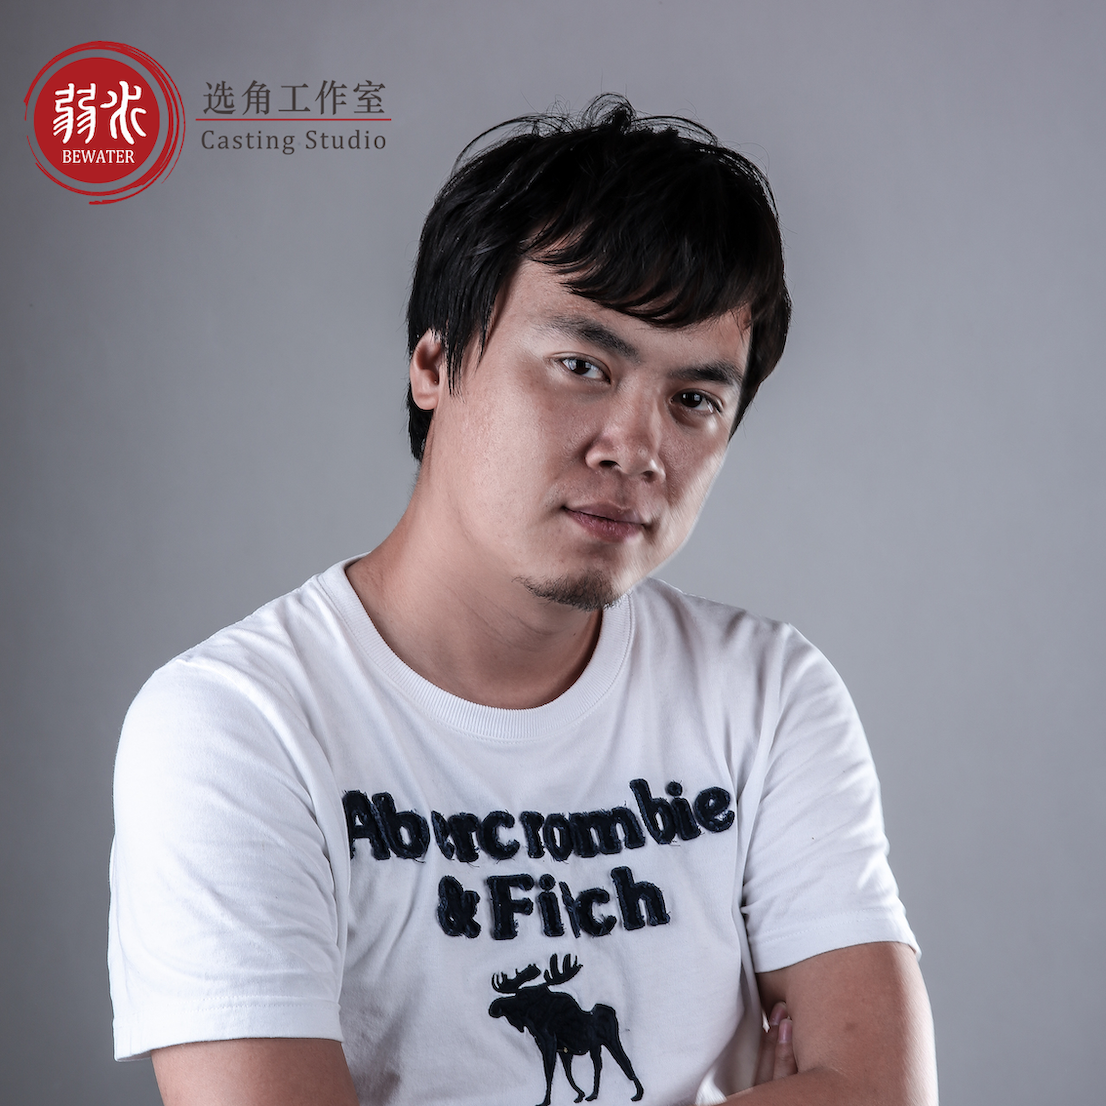 Profile photo for Matt Zhang